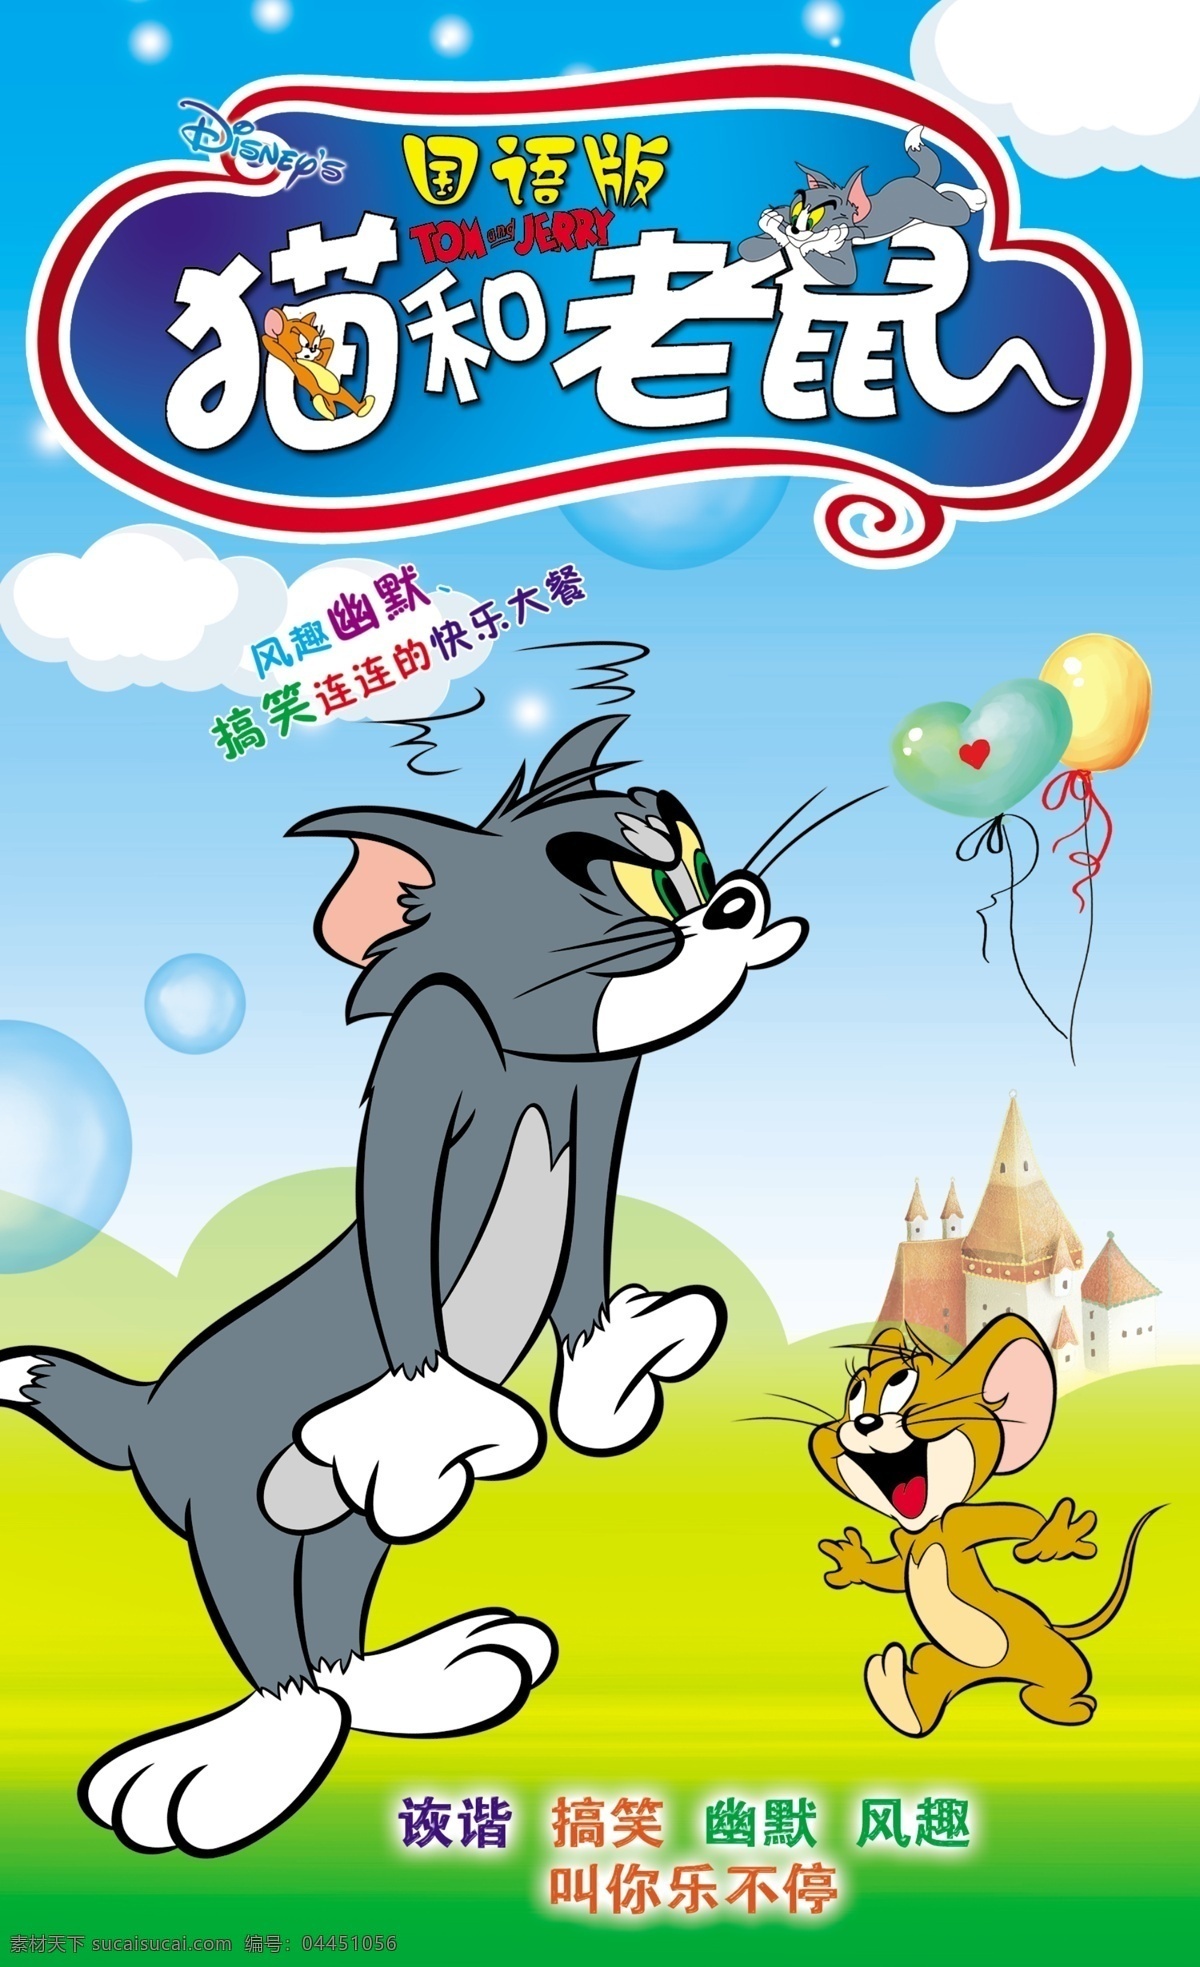 猫和老鼠 模板下载 卡通 猫 老鼠 广告设计模板 源文件